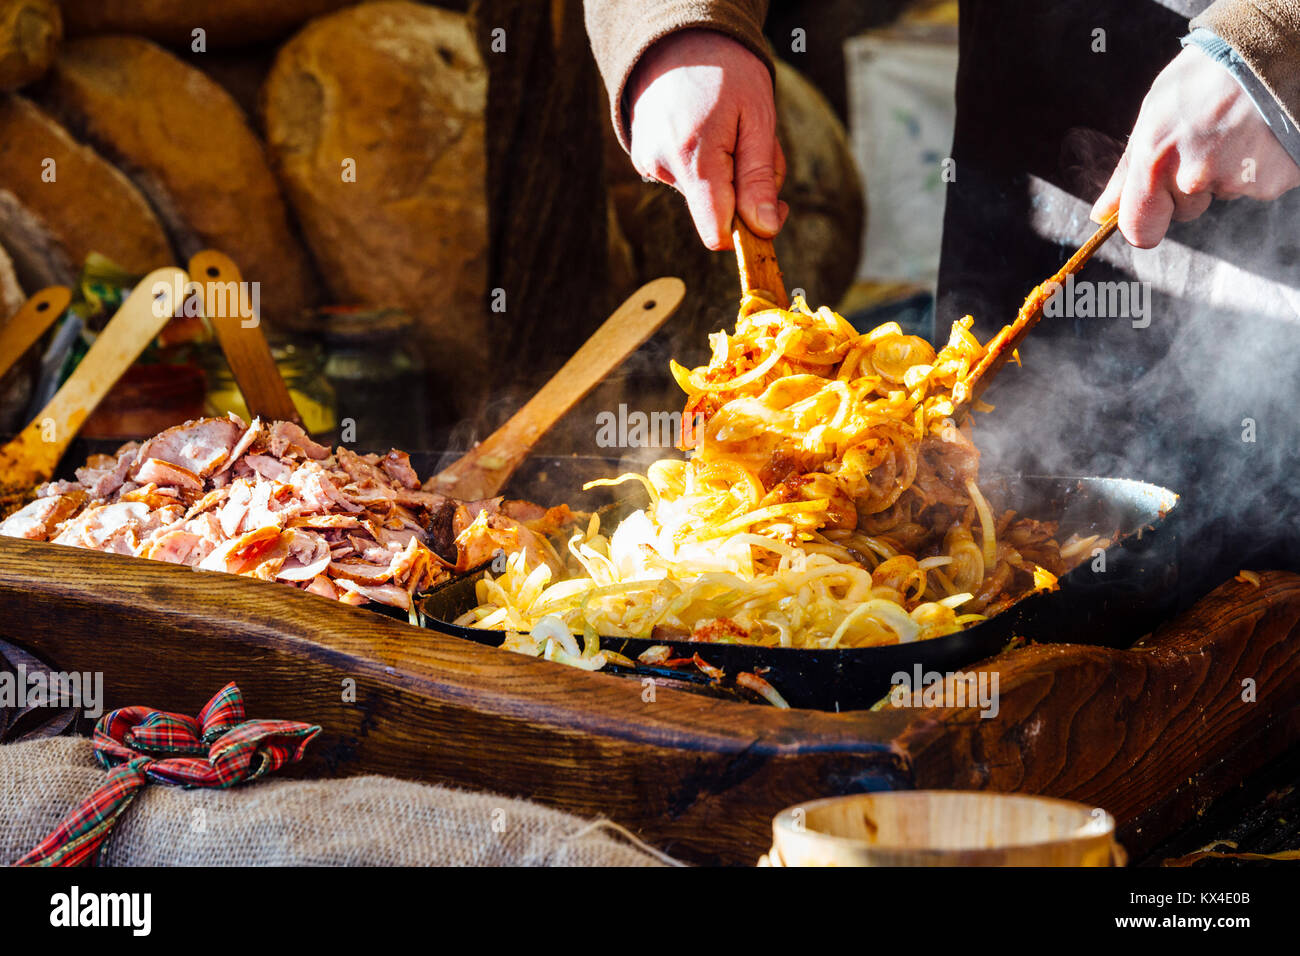 Krakau Weihnachtsmarkt Stall mit traditioneller Scheiben Brot mit gegrilltem Fleisch, Zwiebeln und Soße. Stockfoto